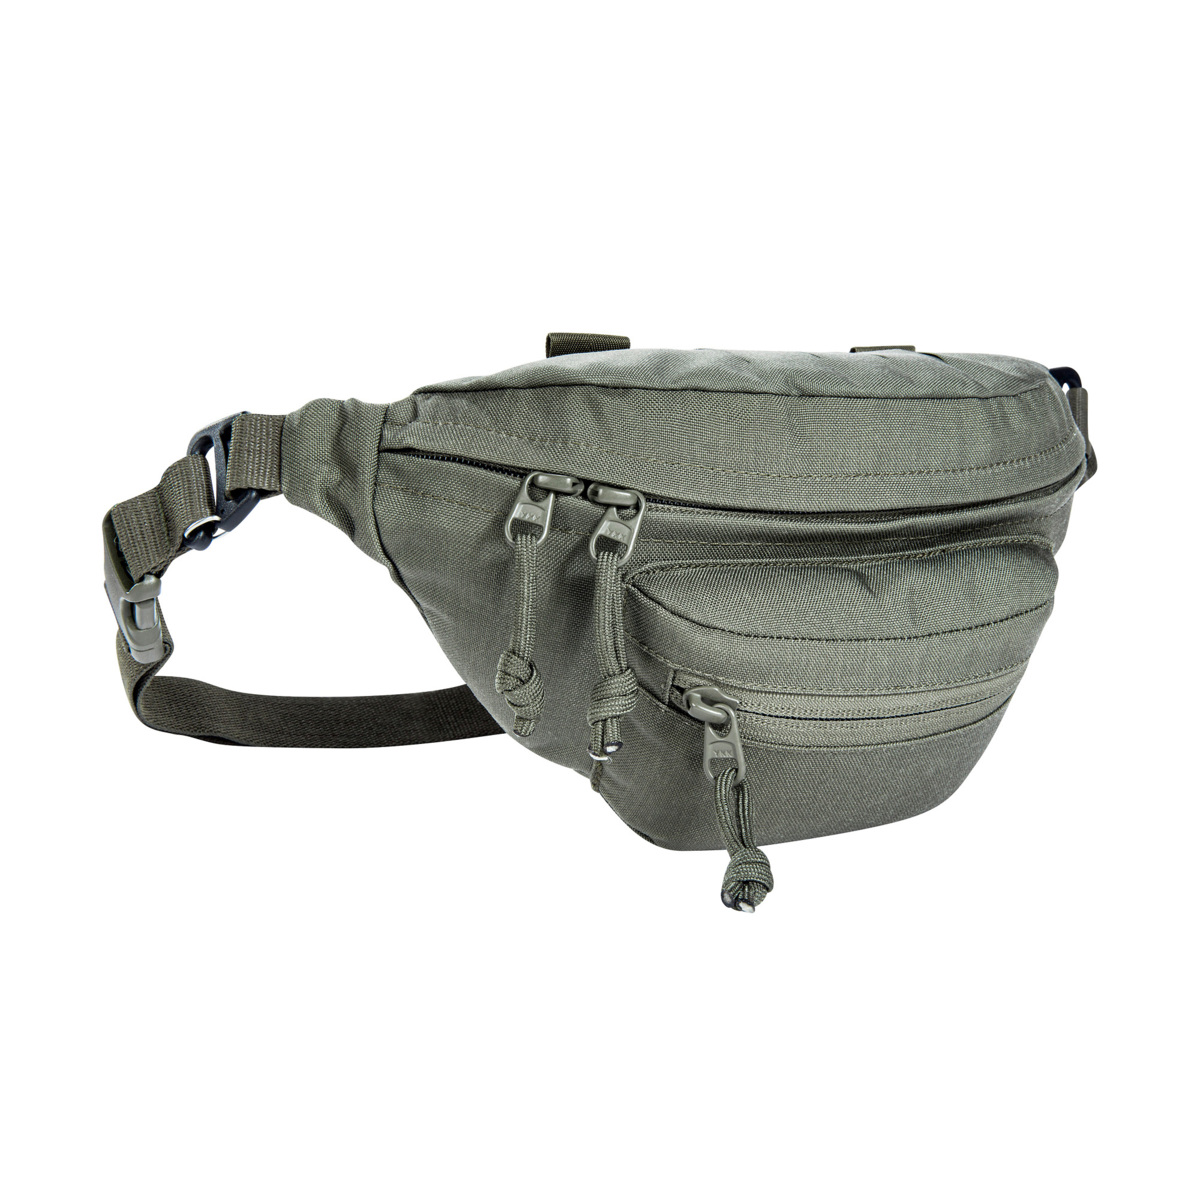 TT Modular Hip Bag IRR - Hip Bag made of CORDURA